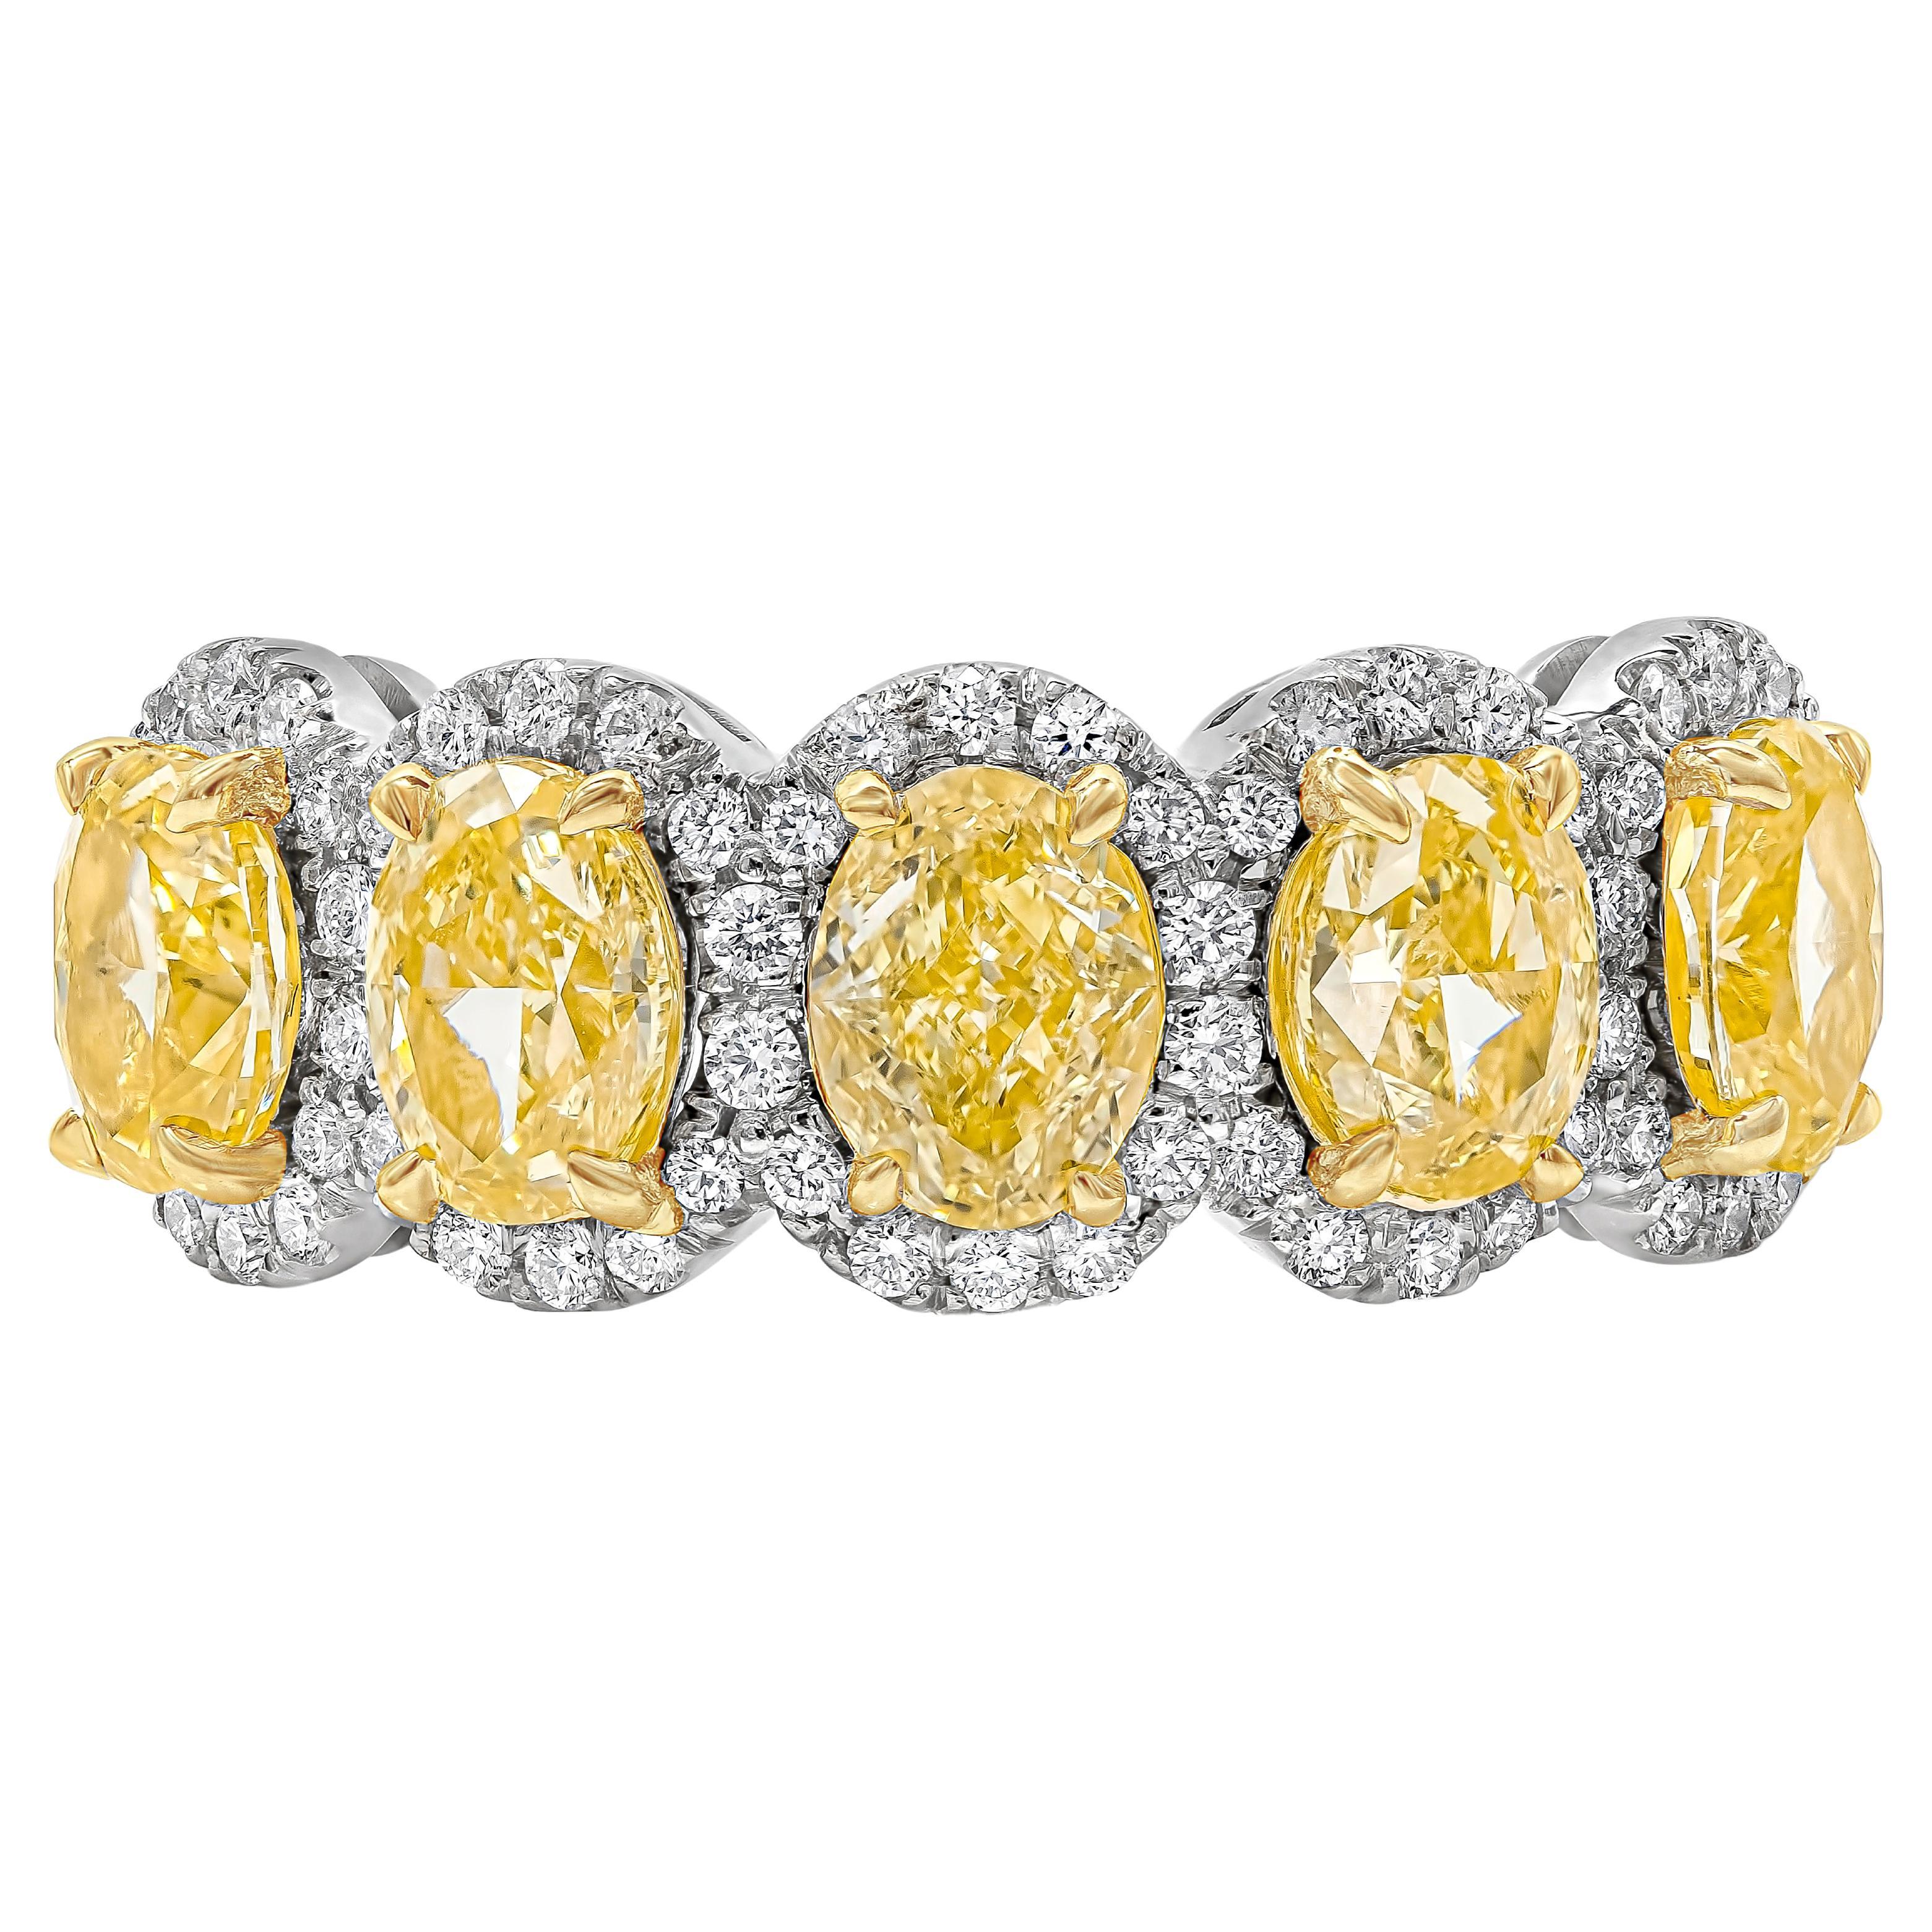 Roman Malakov 2.51 Carats Oval Cut Intense Yellow Diamond Five-Stone Band For Sale